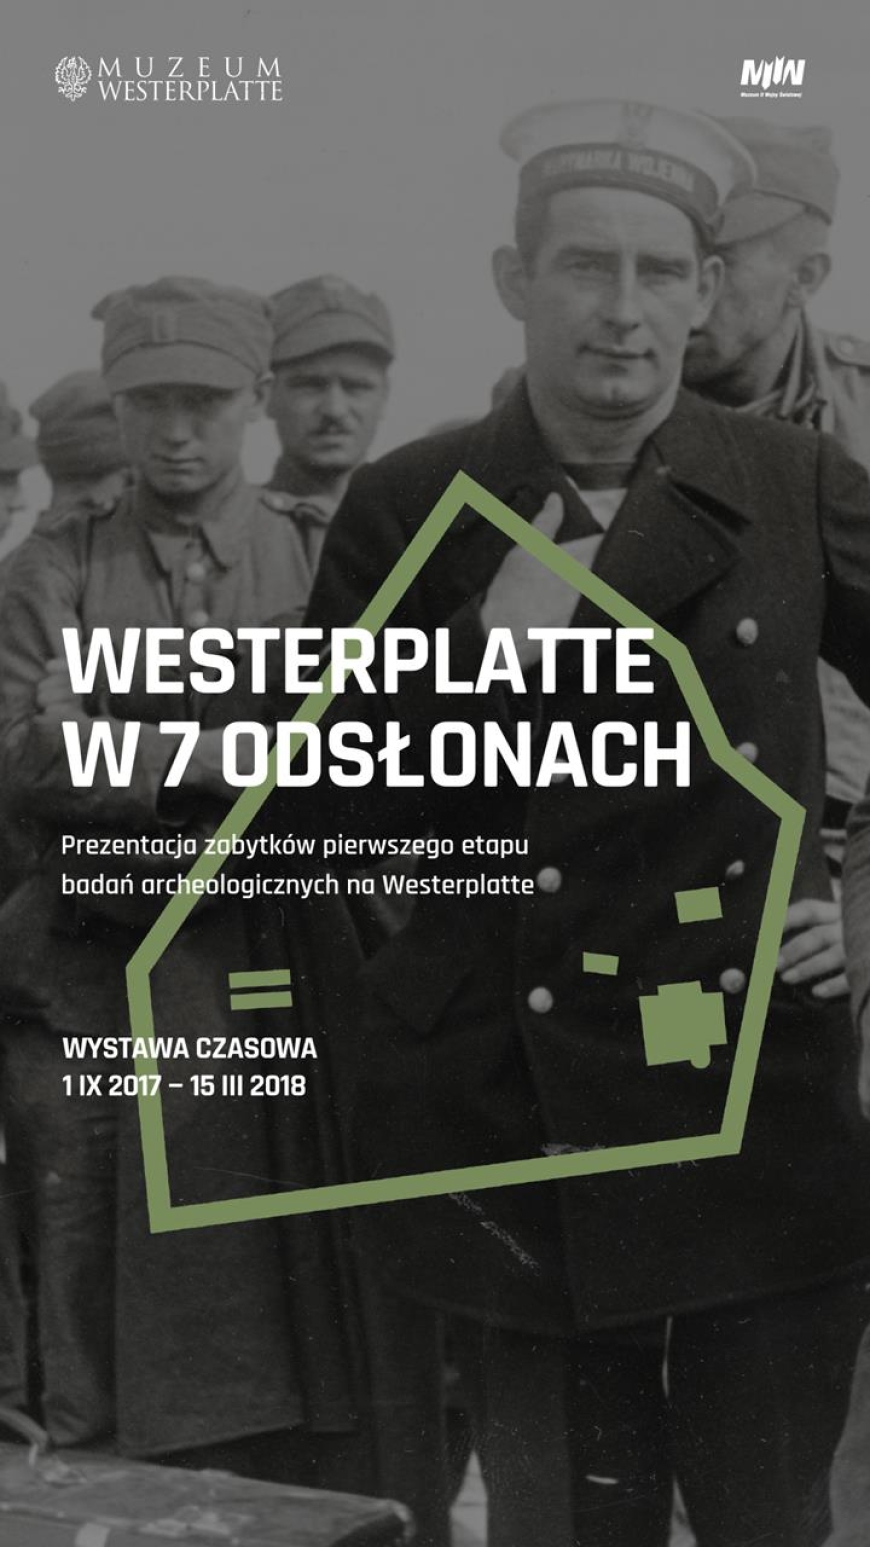 Westerplatte w 7 odsłonach